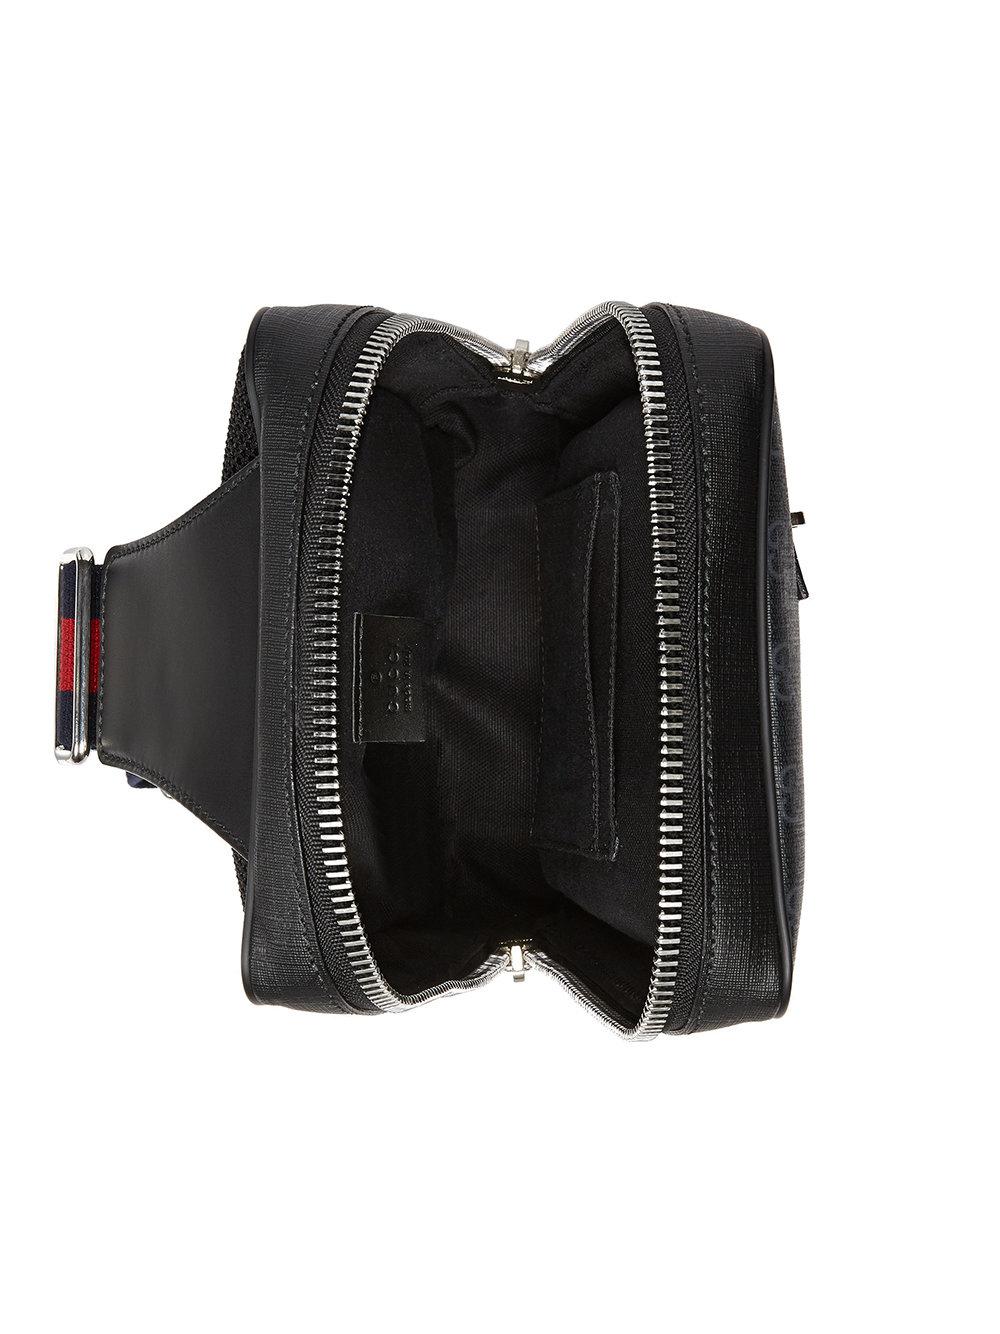 Lyst - Gucci Gg Supreme Belt Bag in Black for Men